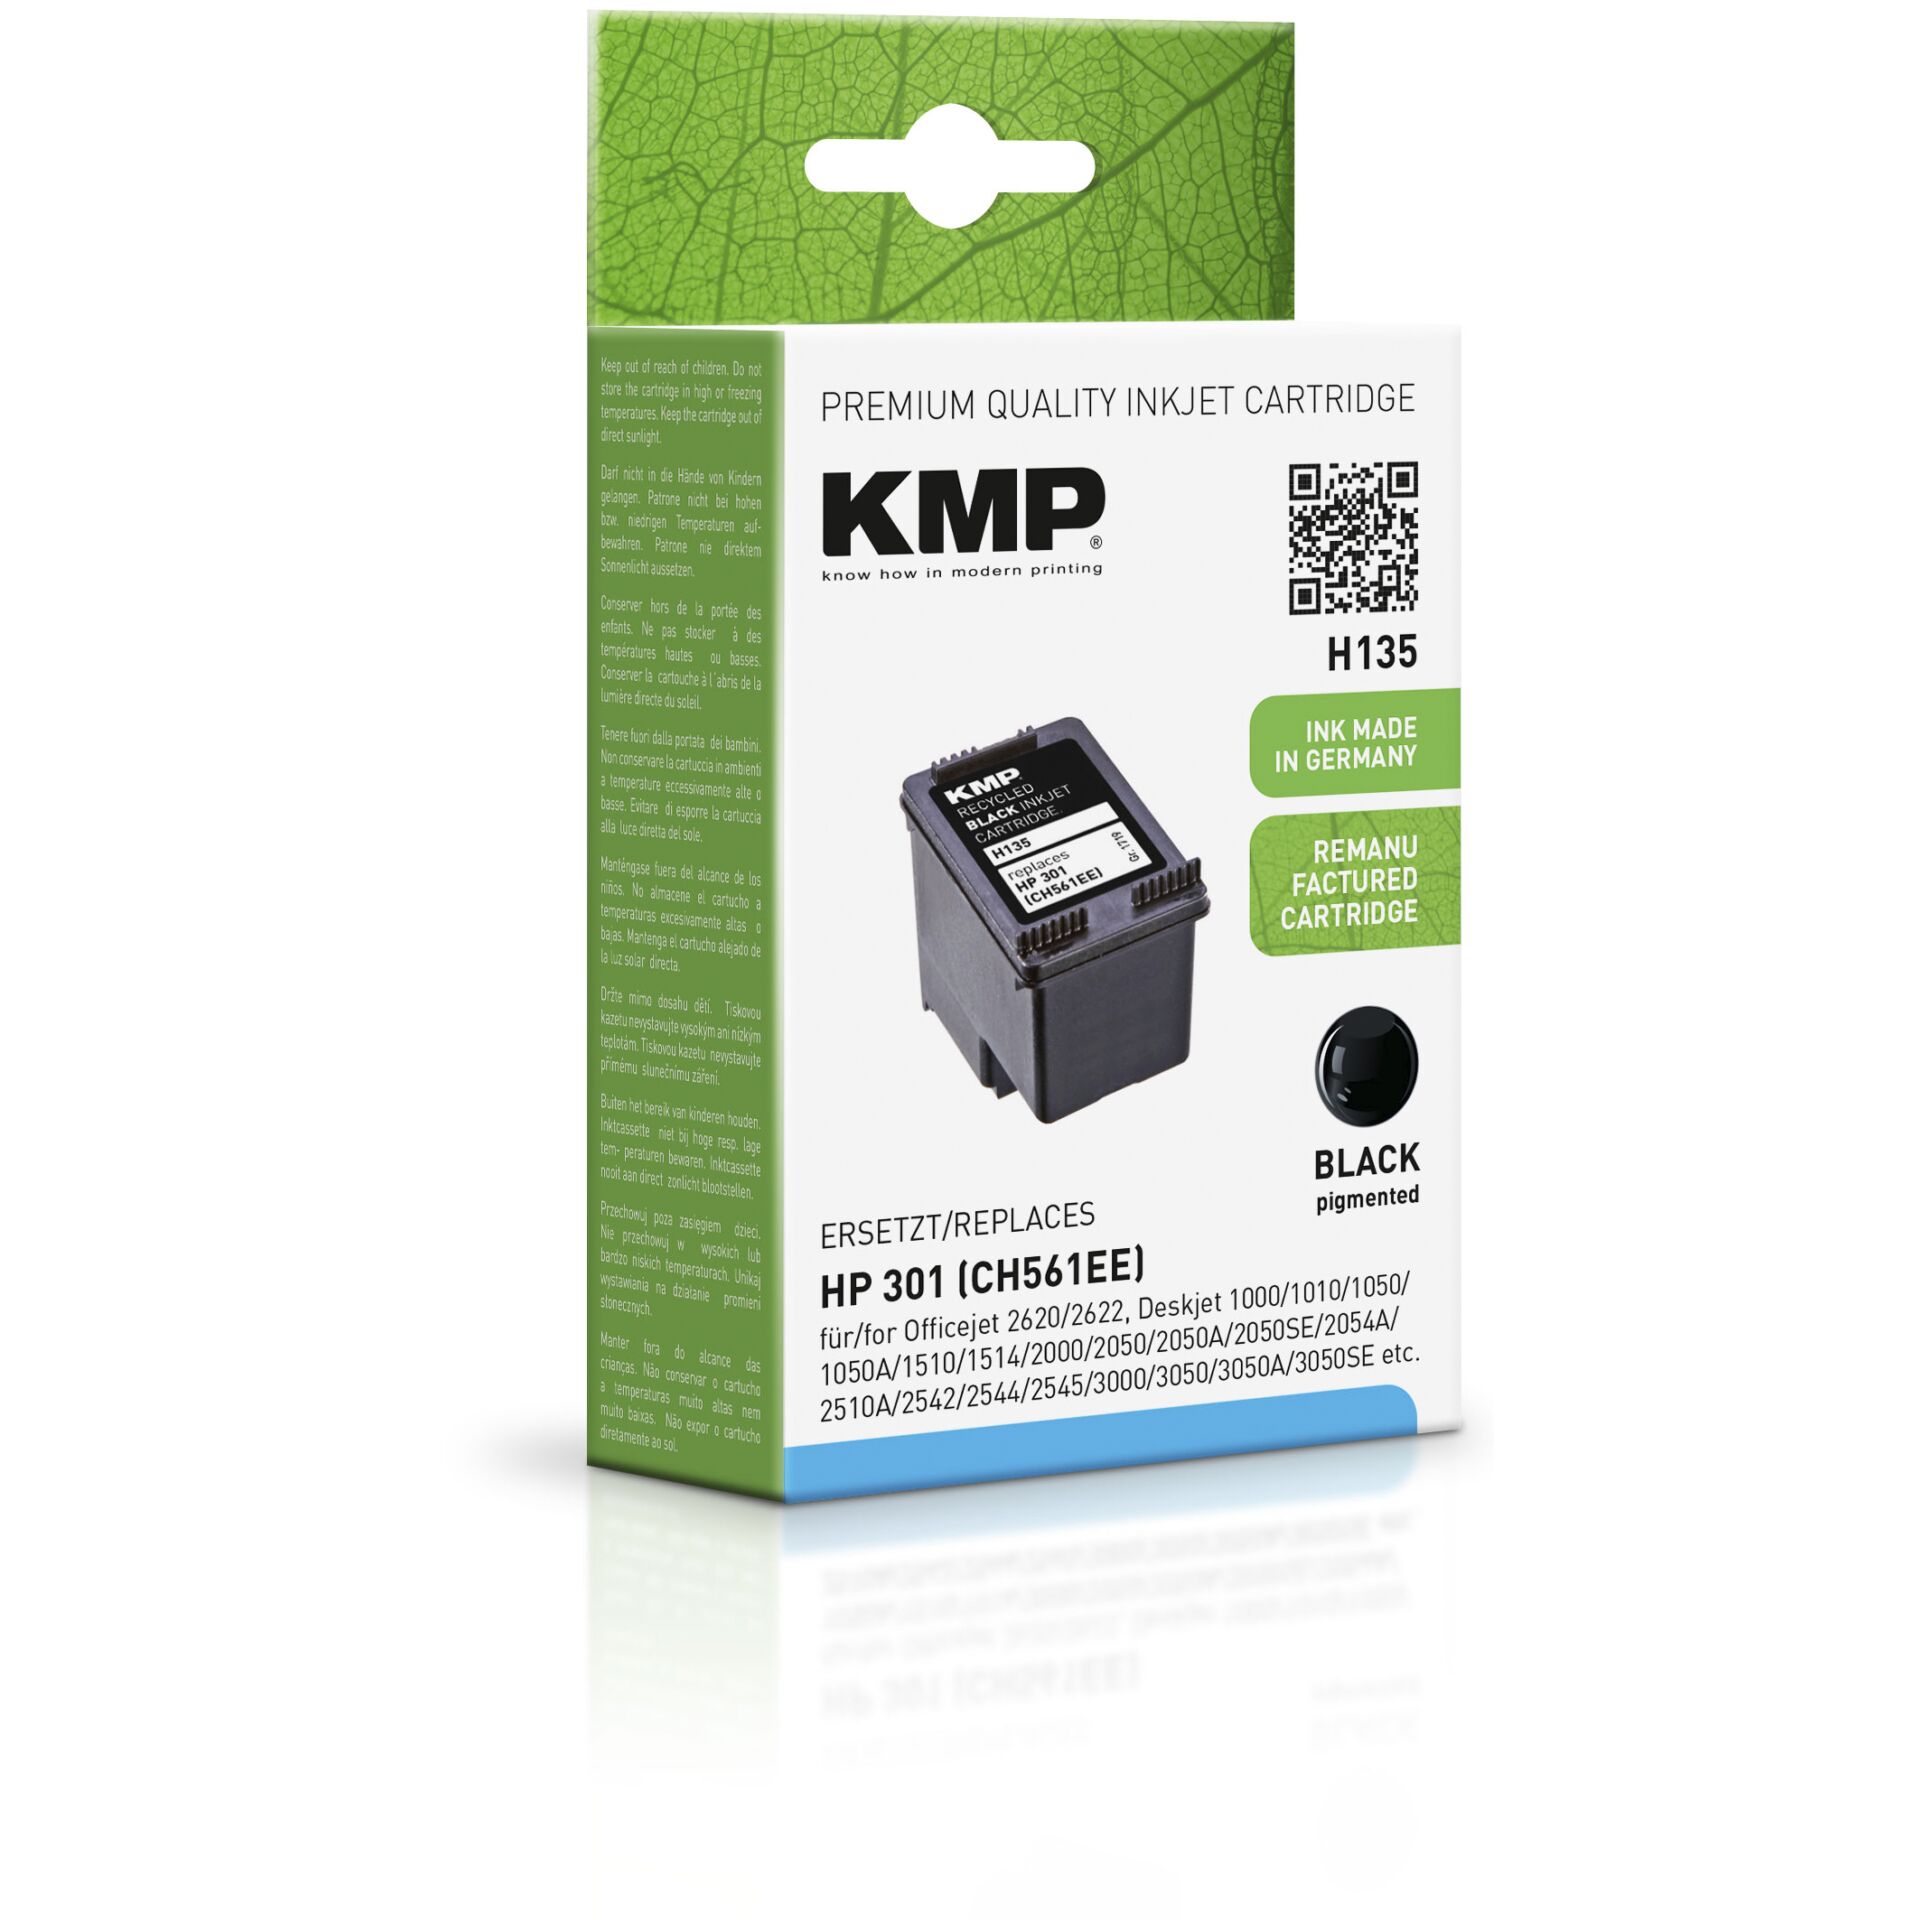 Kmp Printtechnik Ag Patrone Ag black Hardware/Electronic -KMP Printtechnik 190 refilled NR.301 H135 CH561EE HP -Kmp S